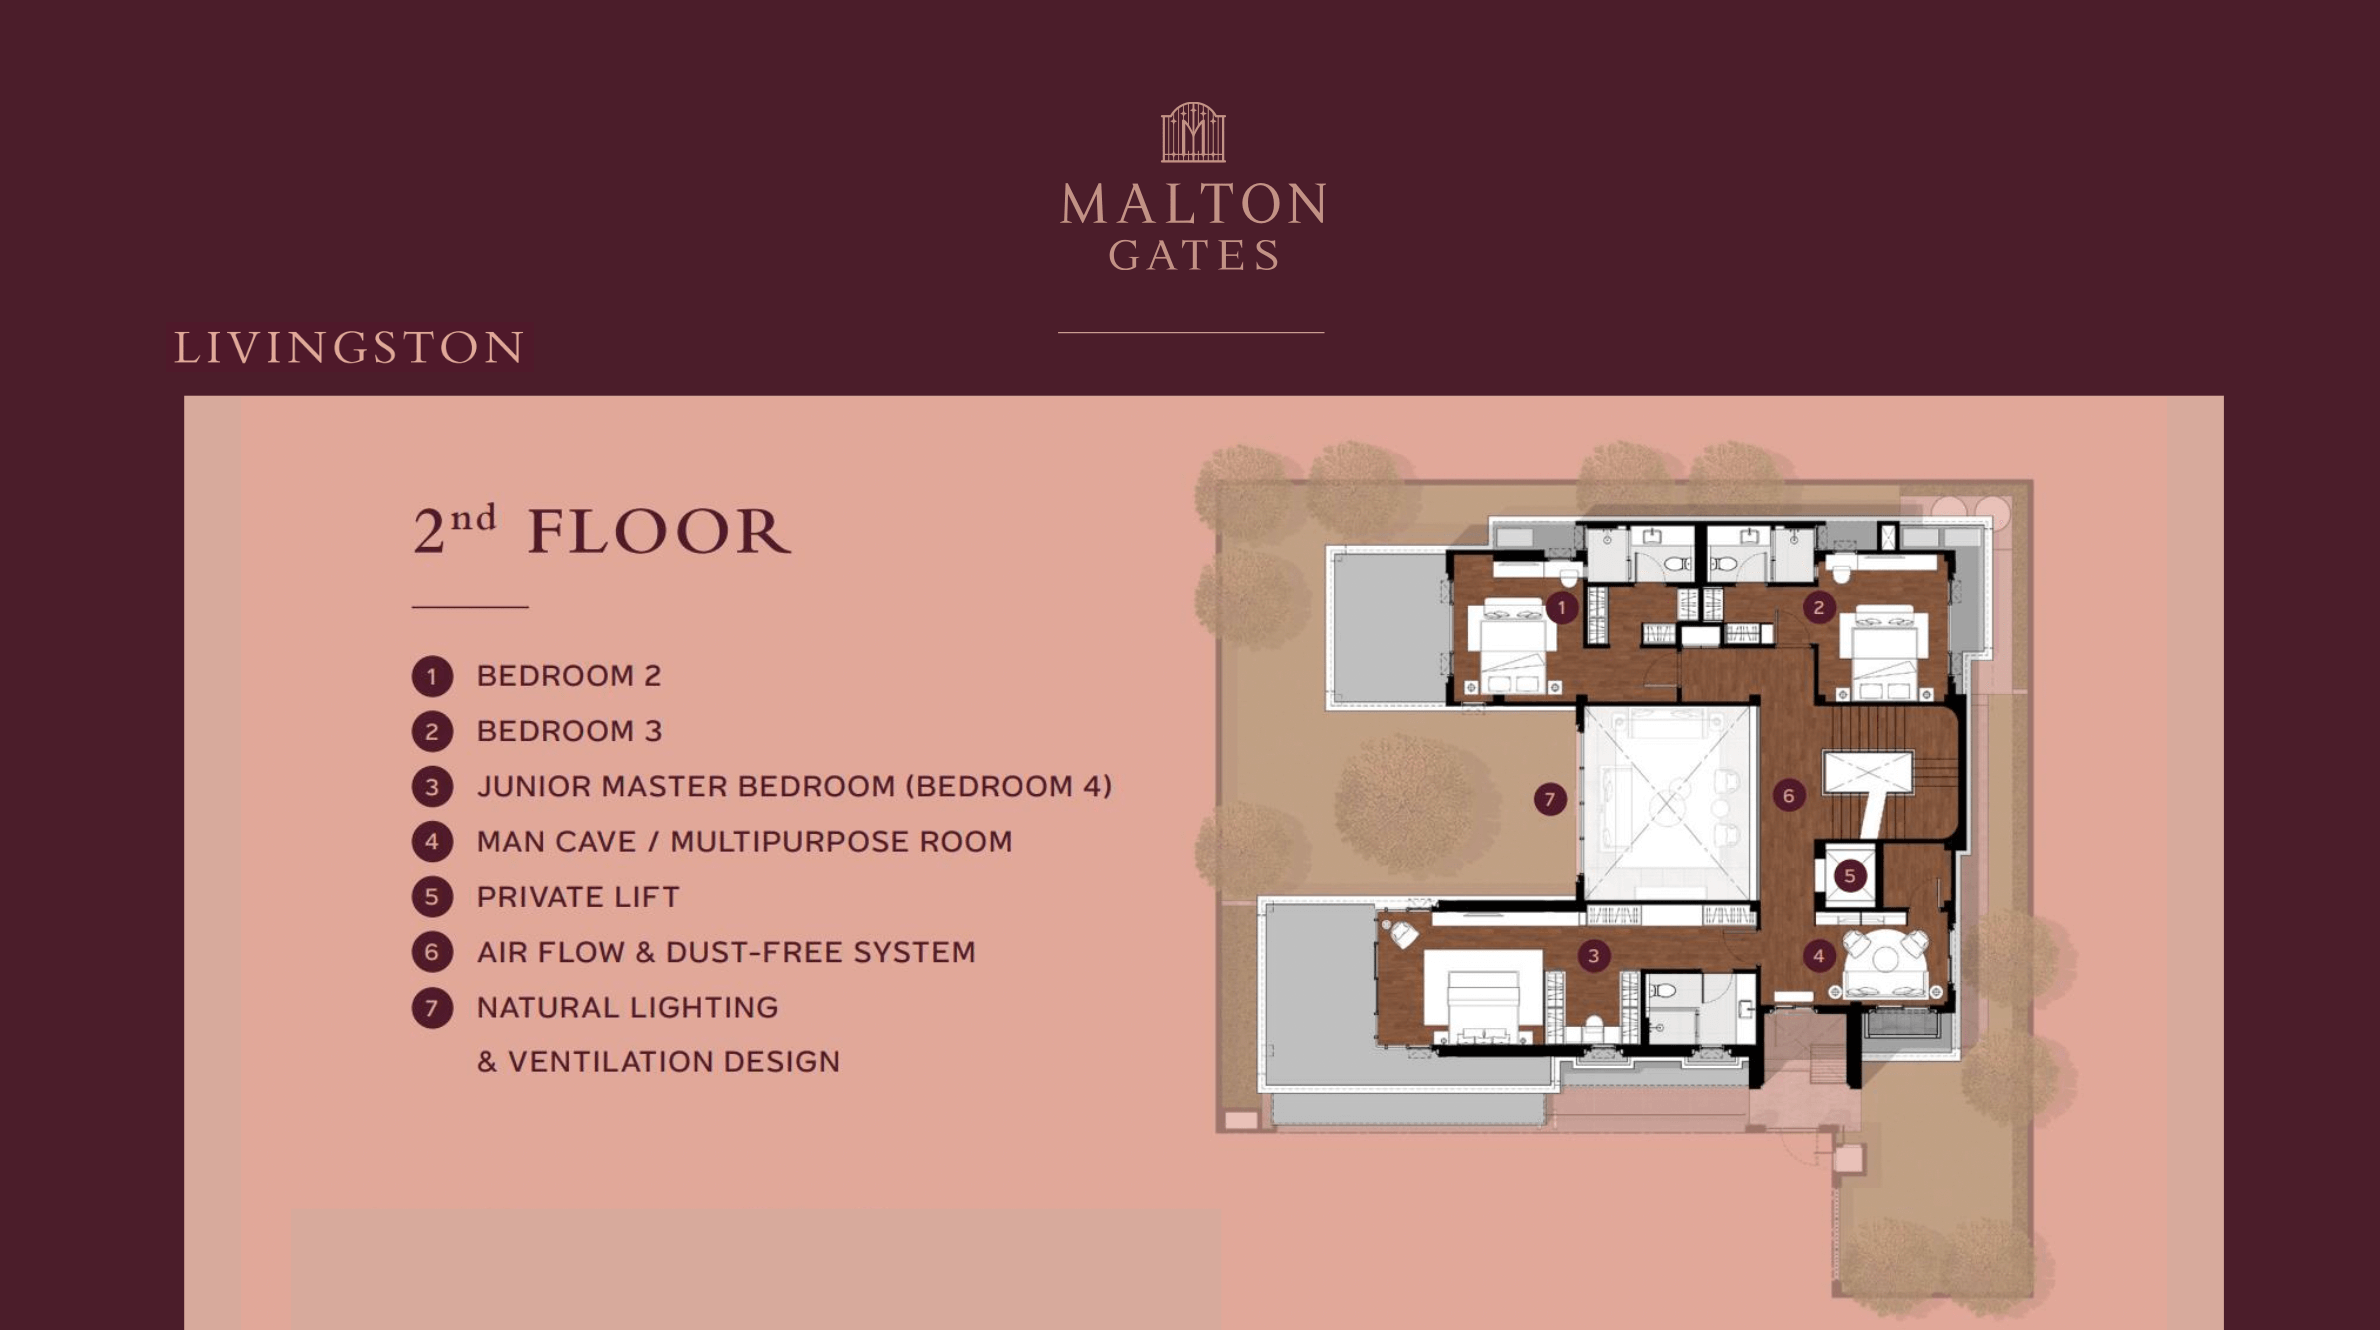 Malton Gates Livington Floor Plan 2